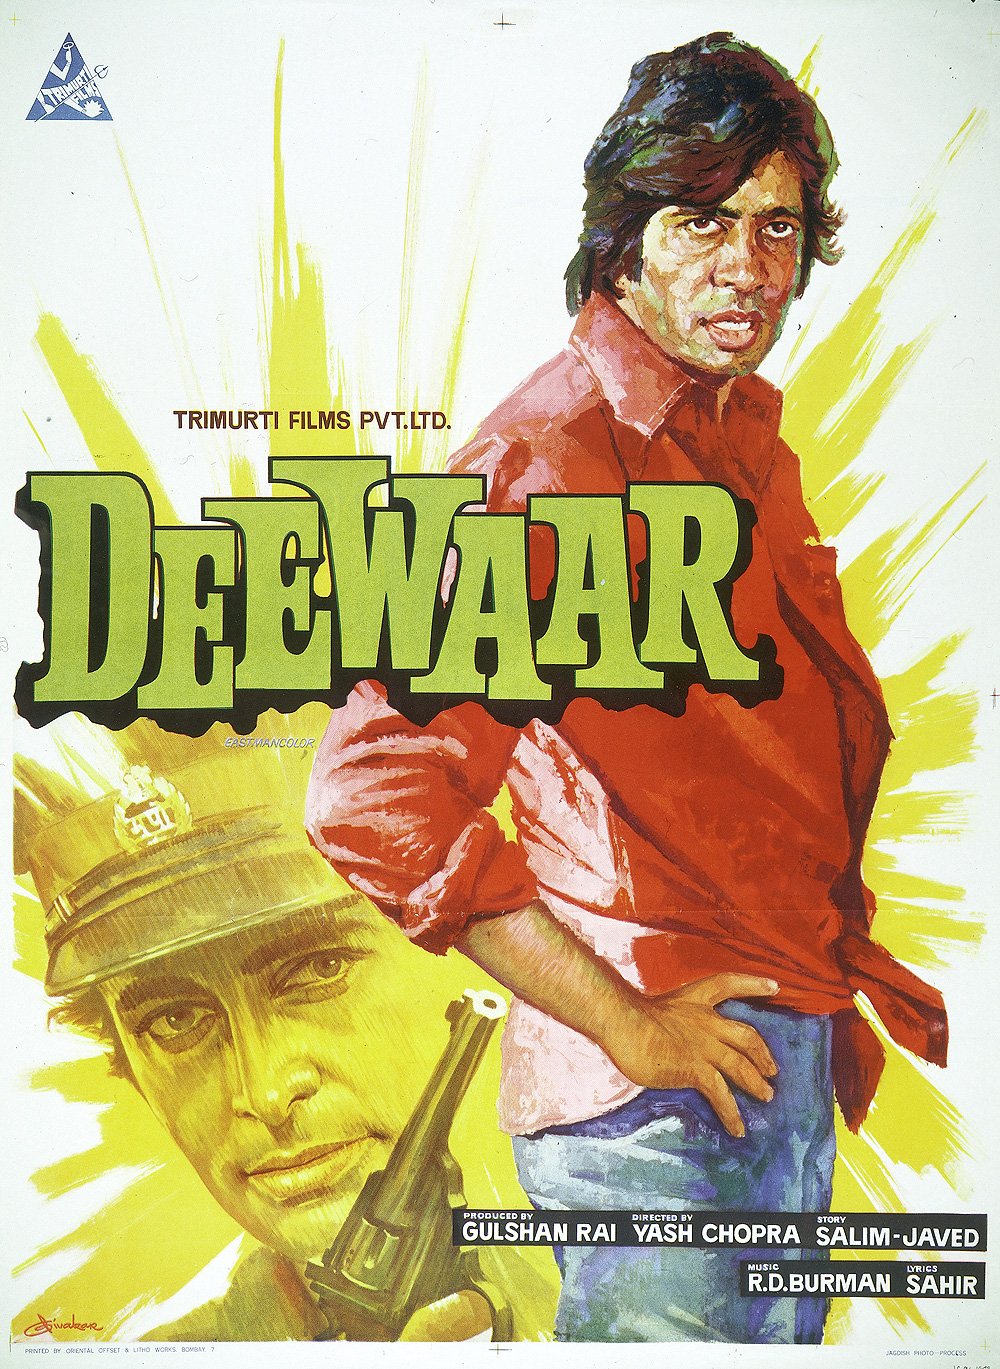 Hindi poster of the movie Deewaar